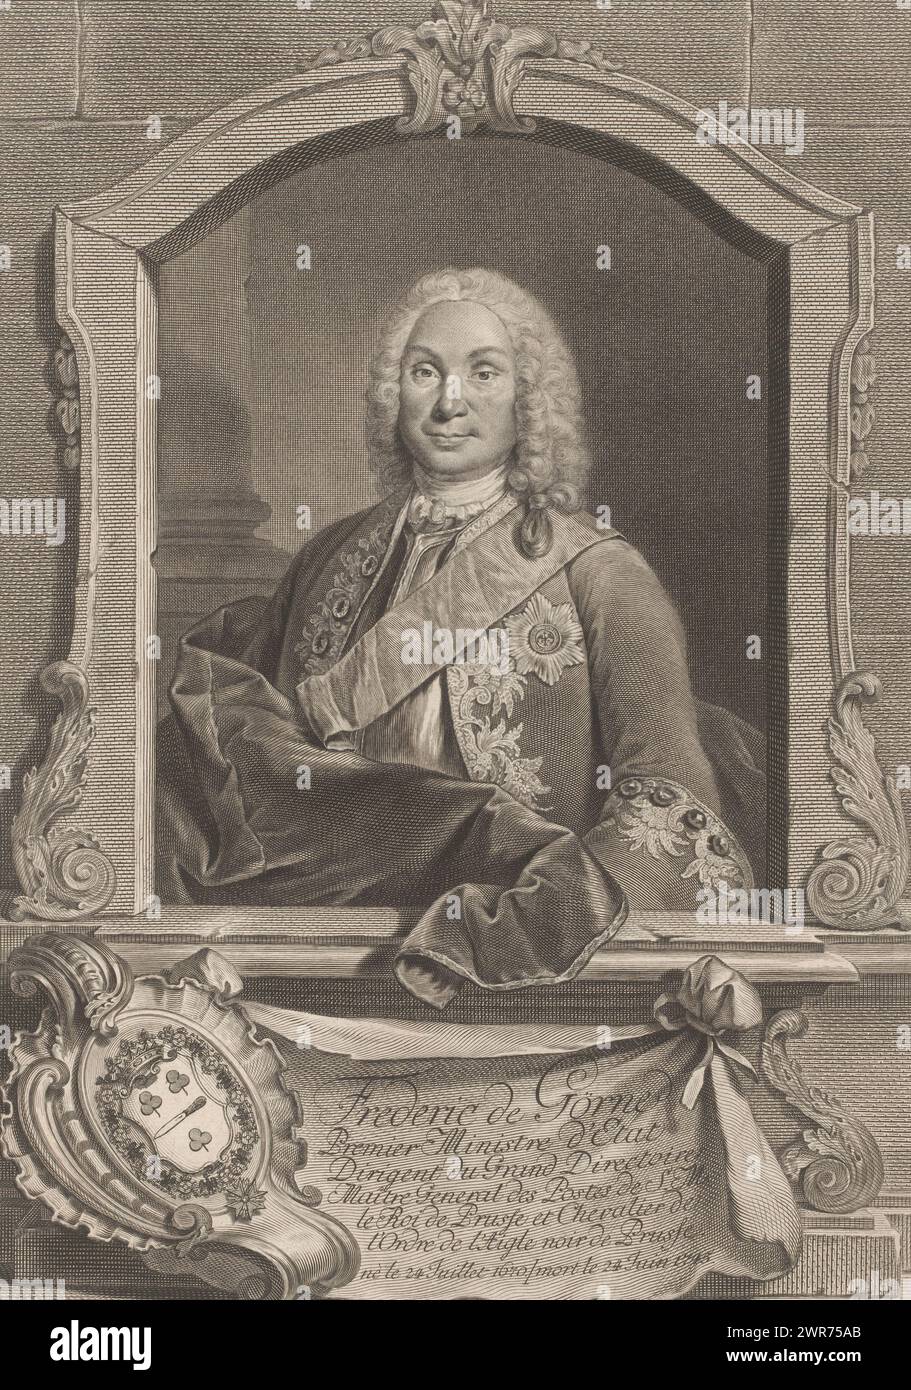 Portrait of Friedrich von Görne, print maker: Georg Friedrich Schmidt, Berlin, 1745 - 1775, paper, engraving, etching, height 398 mm × width 286 mm, print Stock Photo